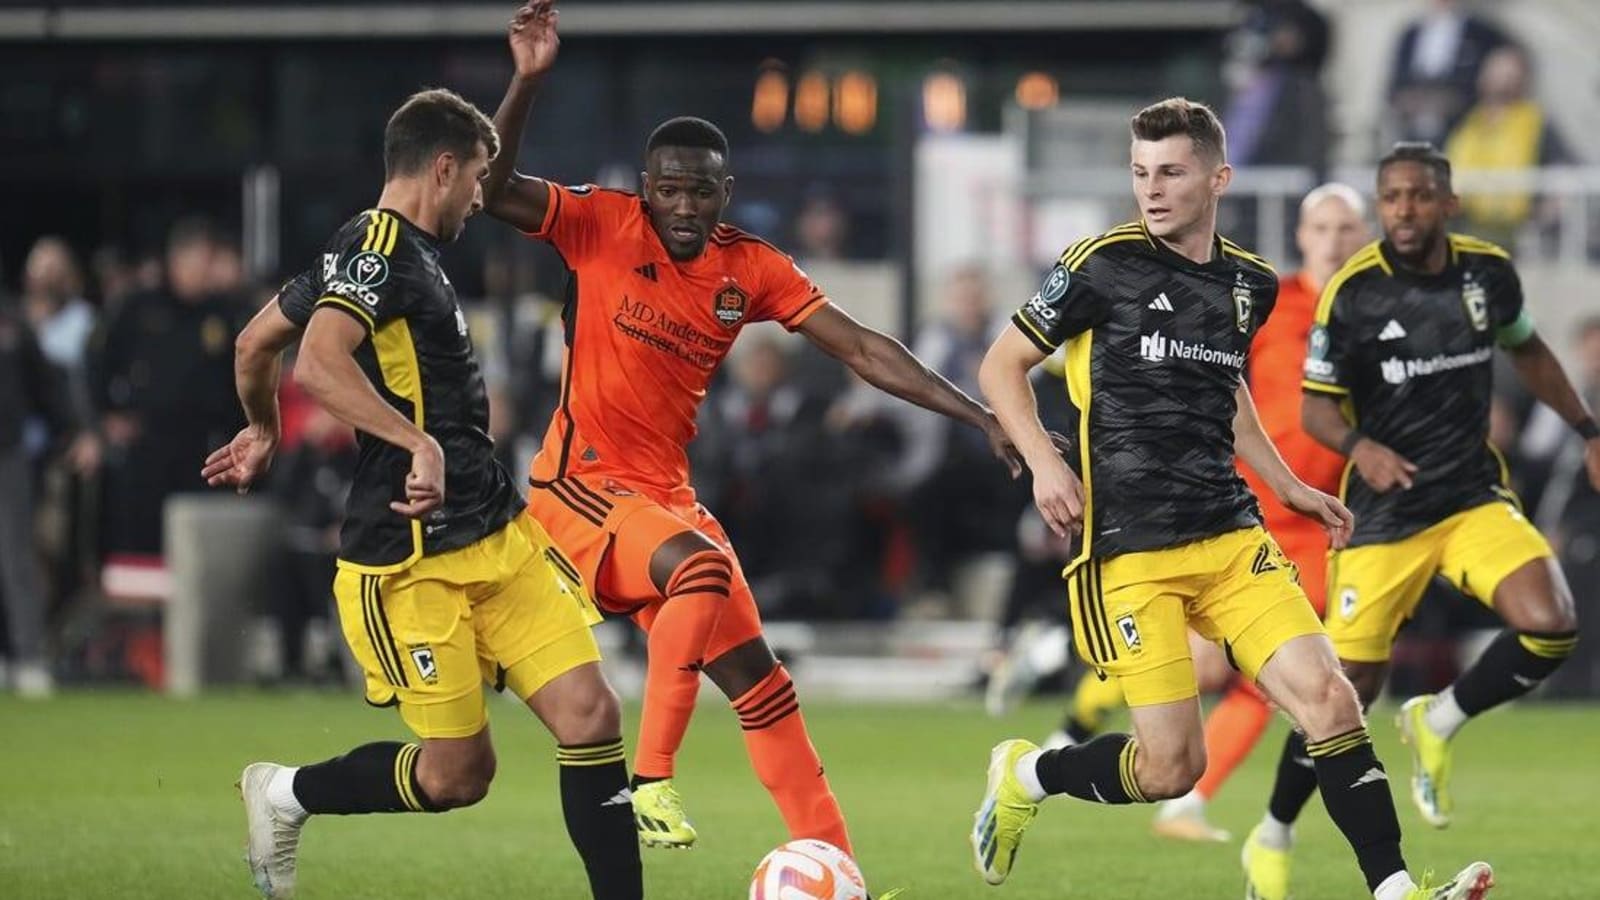 Dynamo seek first win of season, take on surging Timbers